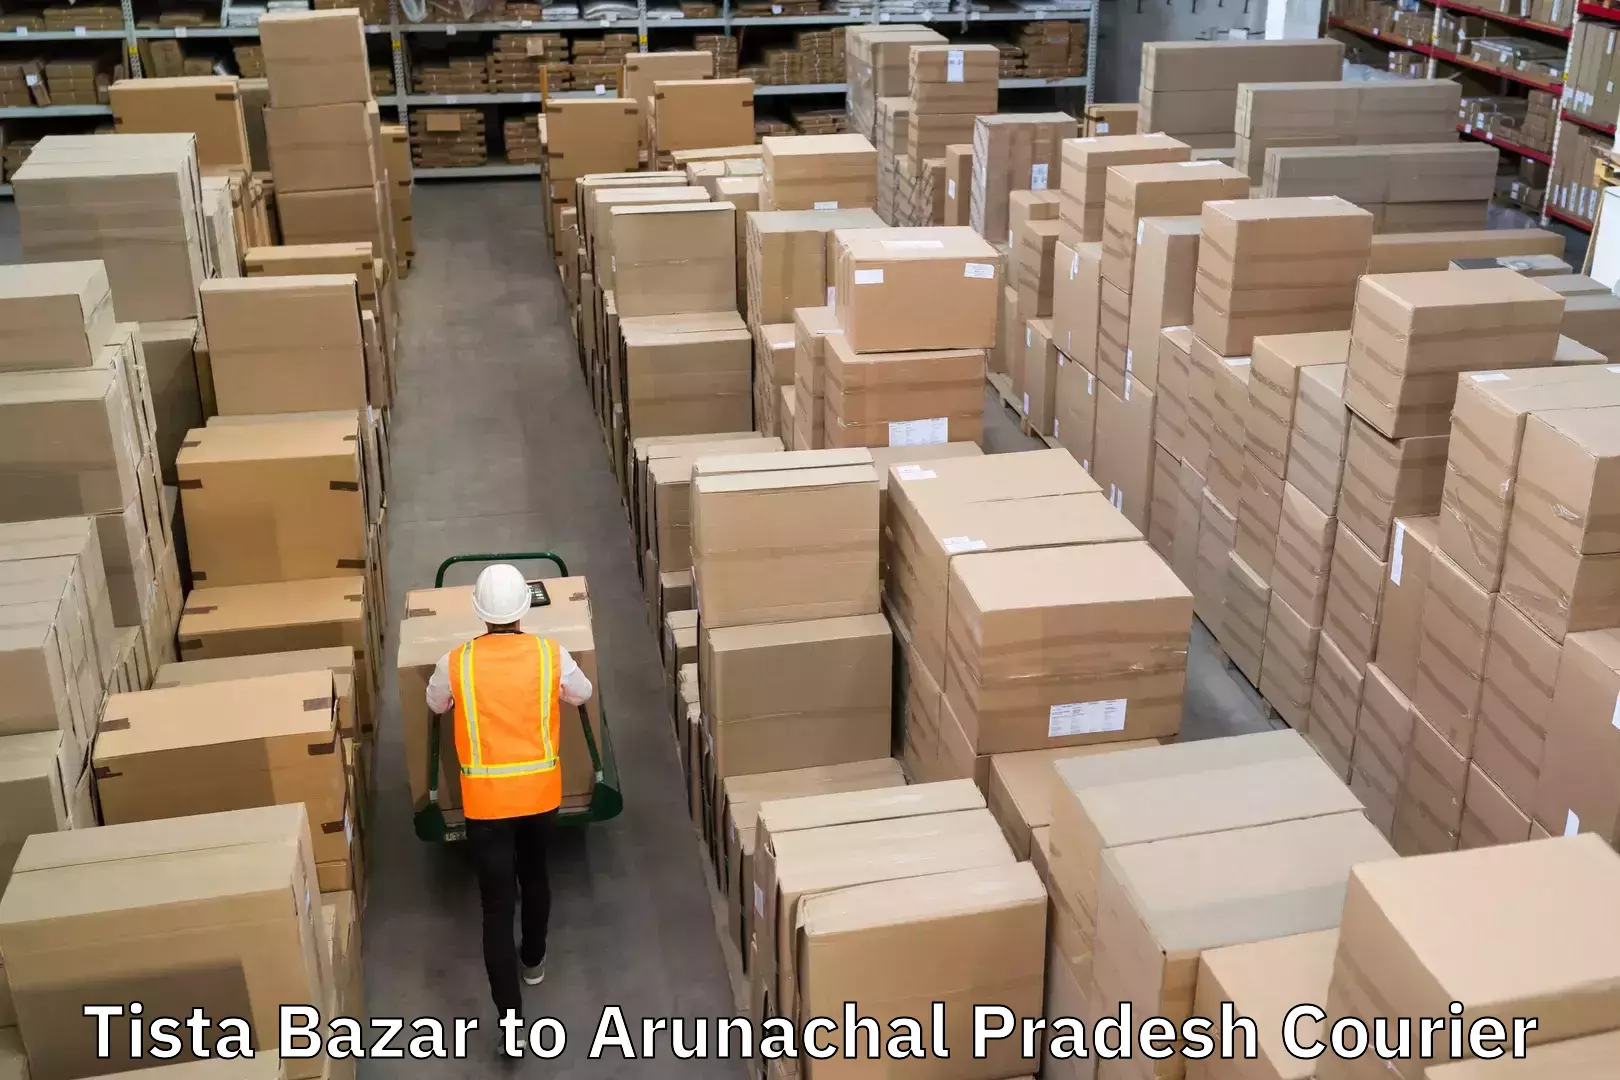 Multi-service courier options Tista Bazar to Arunachal Pradesh